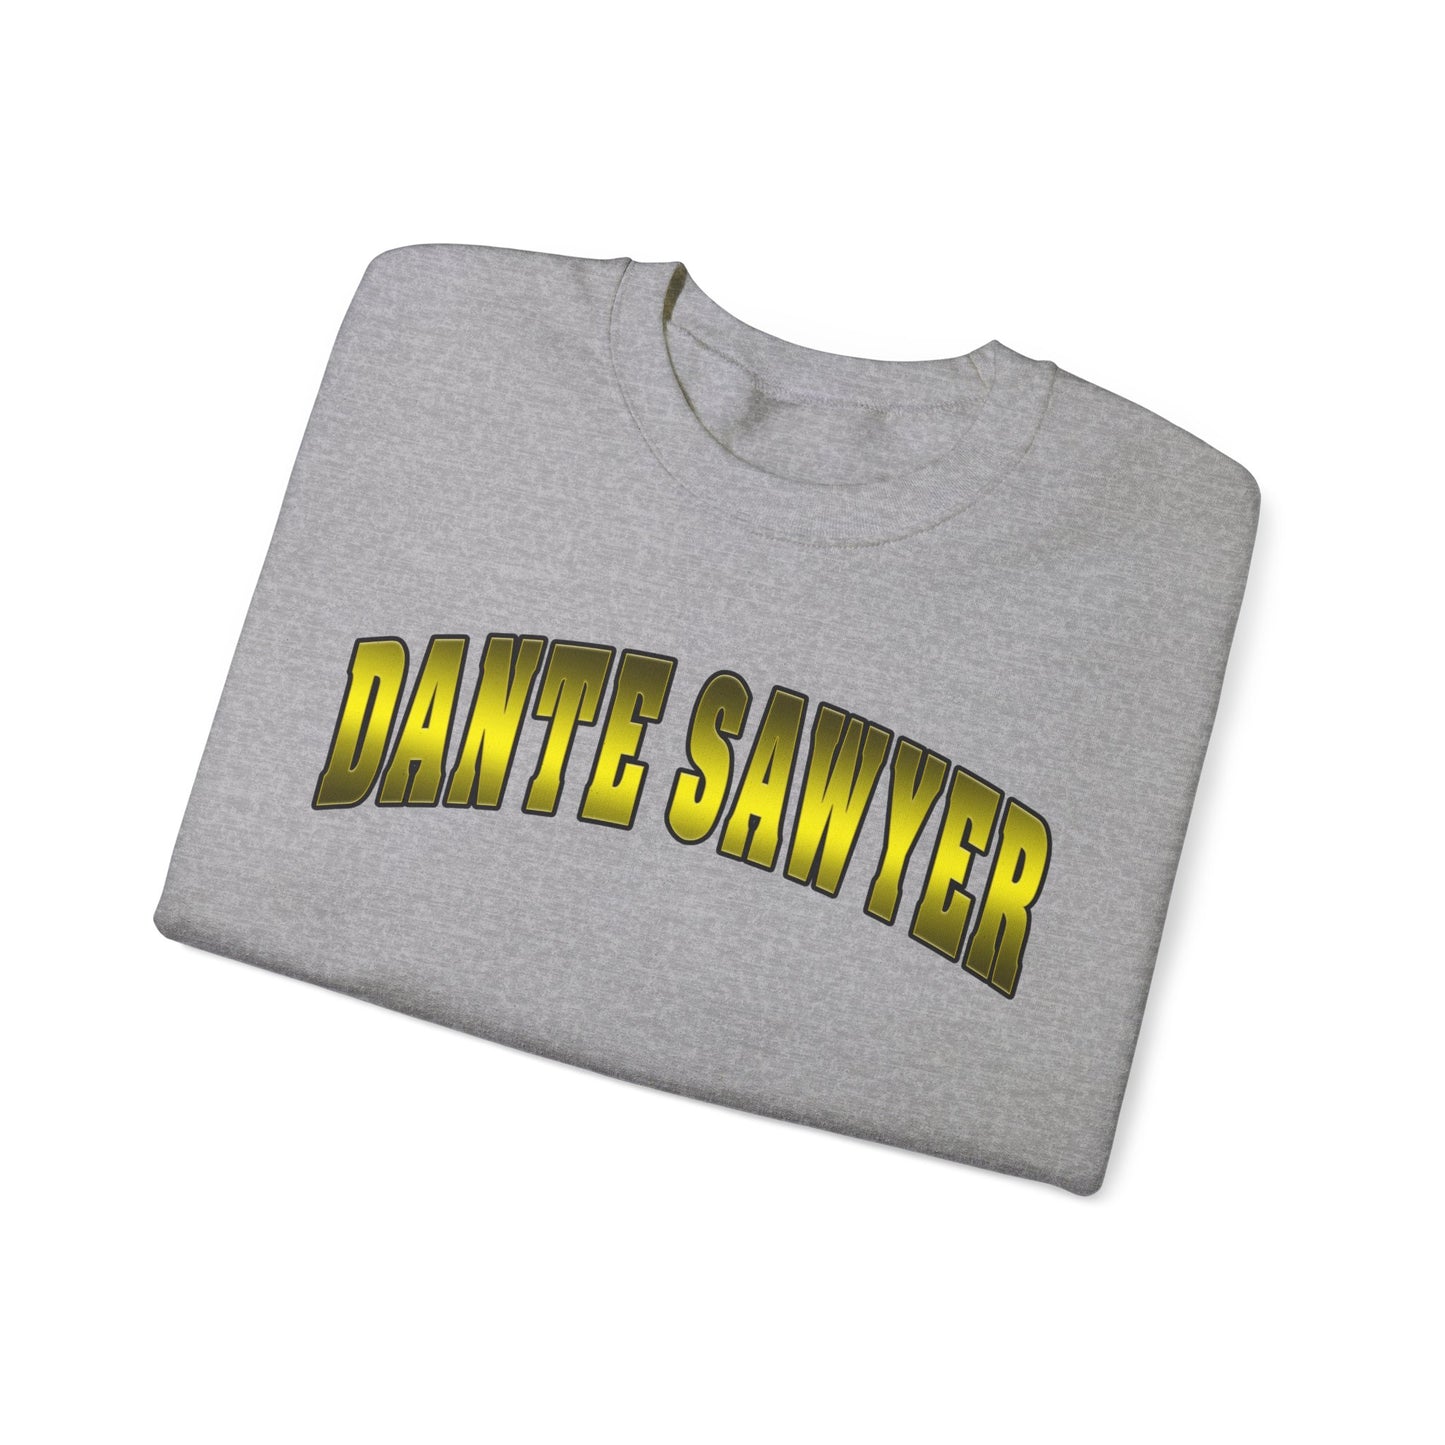 Dante Sawyer Crewneck Sweatshirt